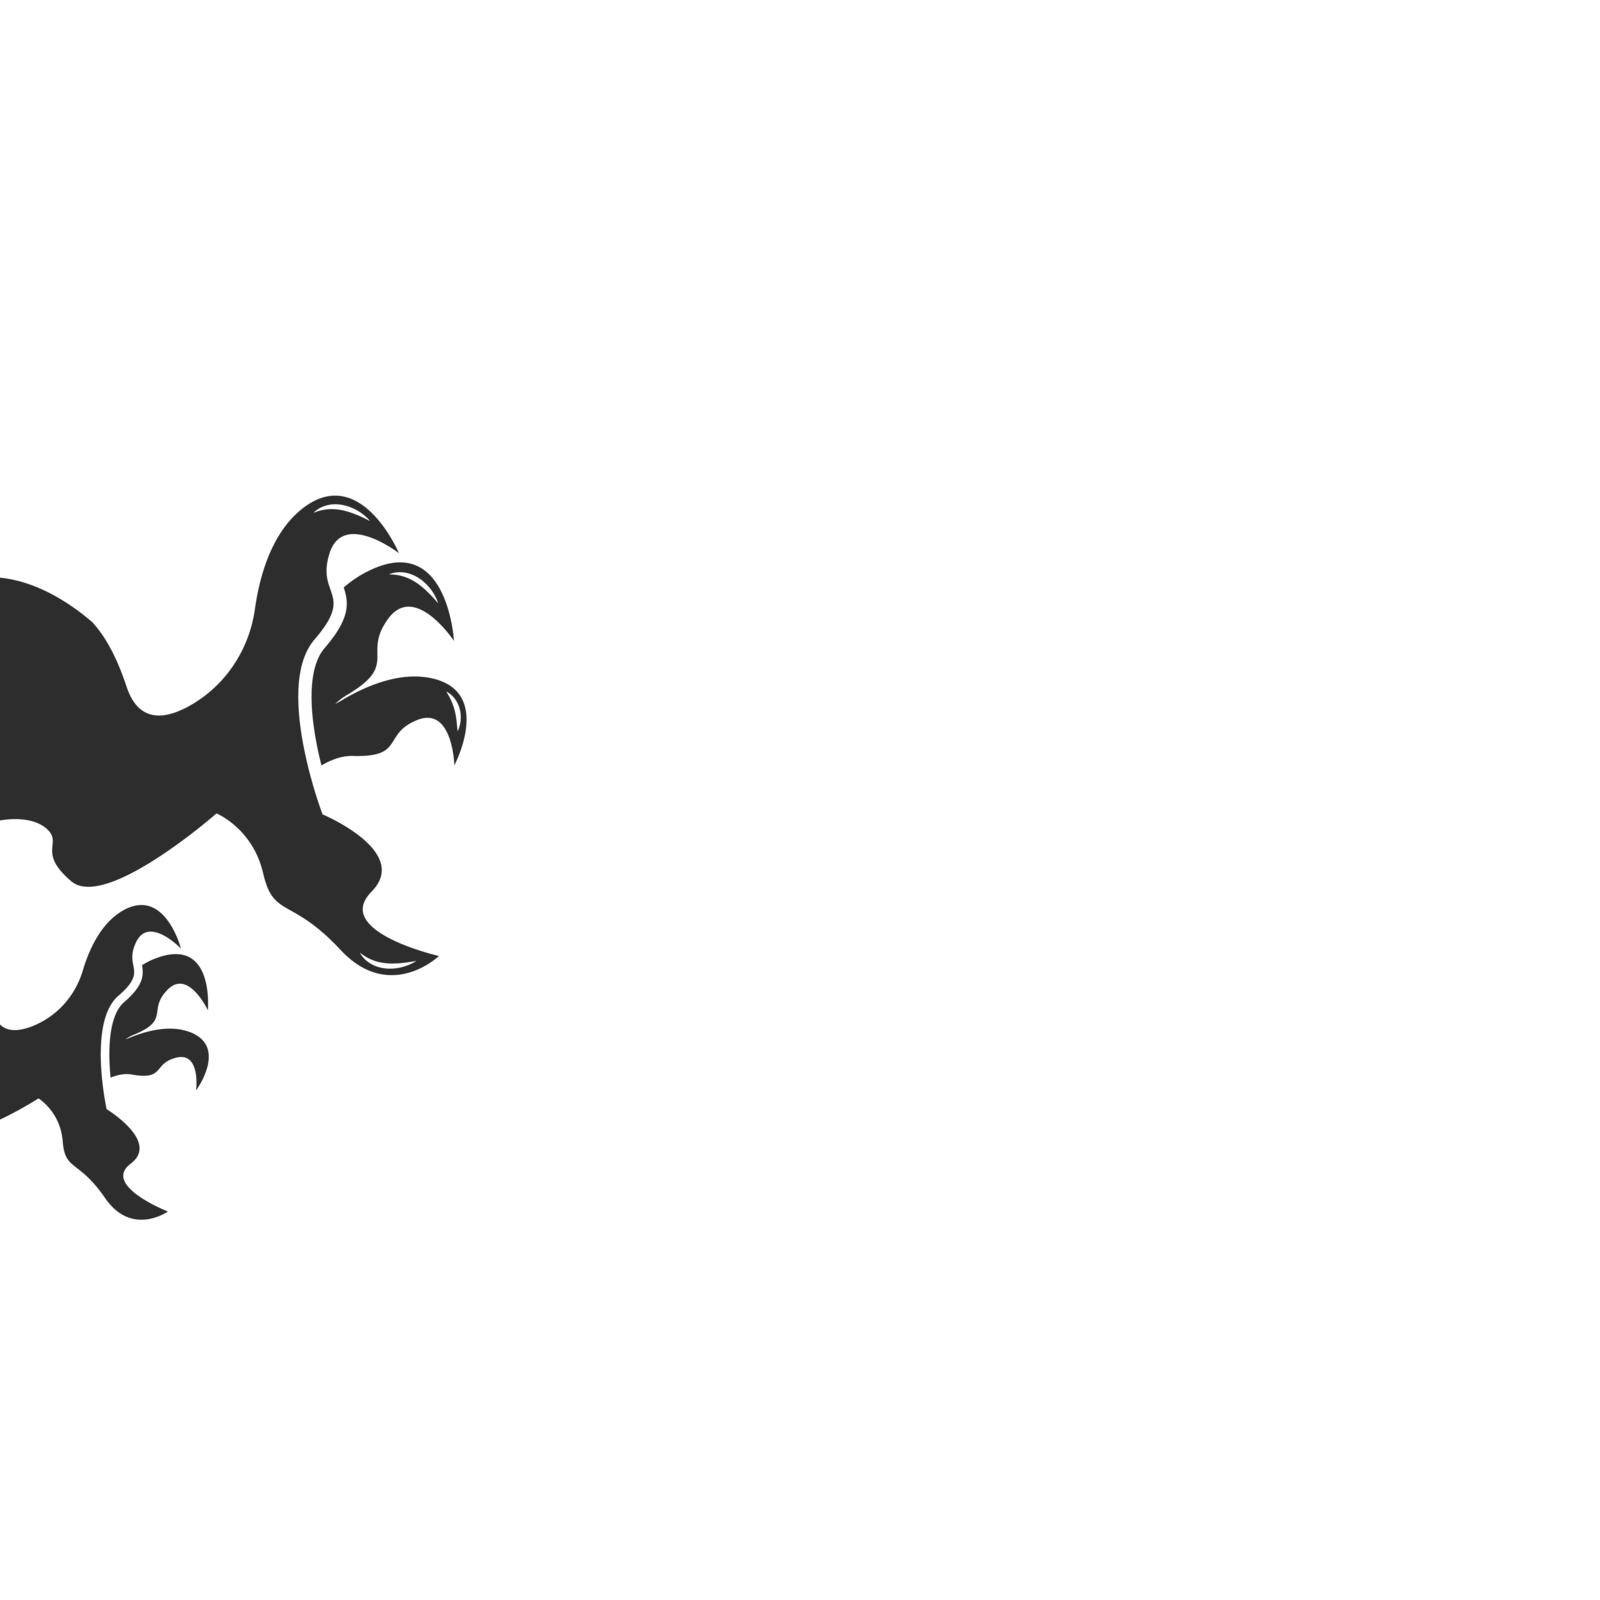 Dragon claw  icon template vector illustration design